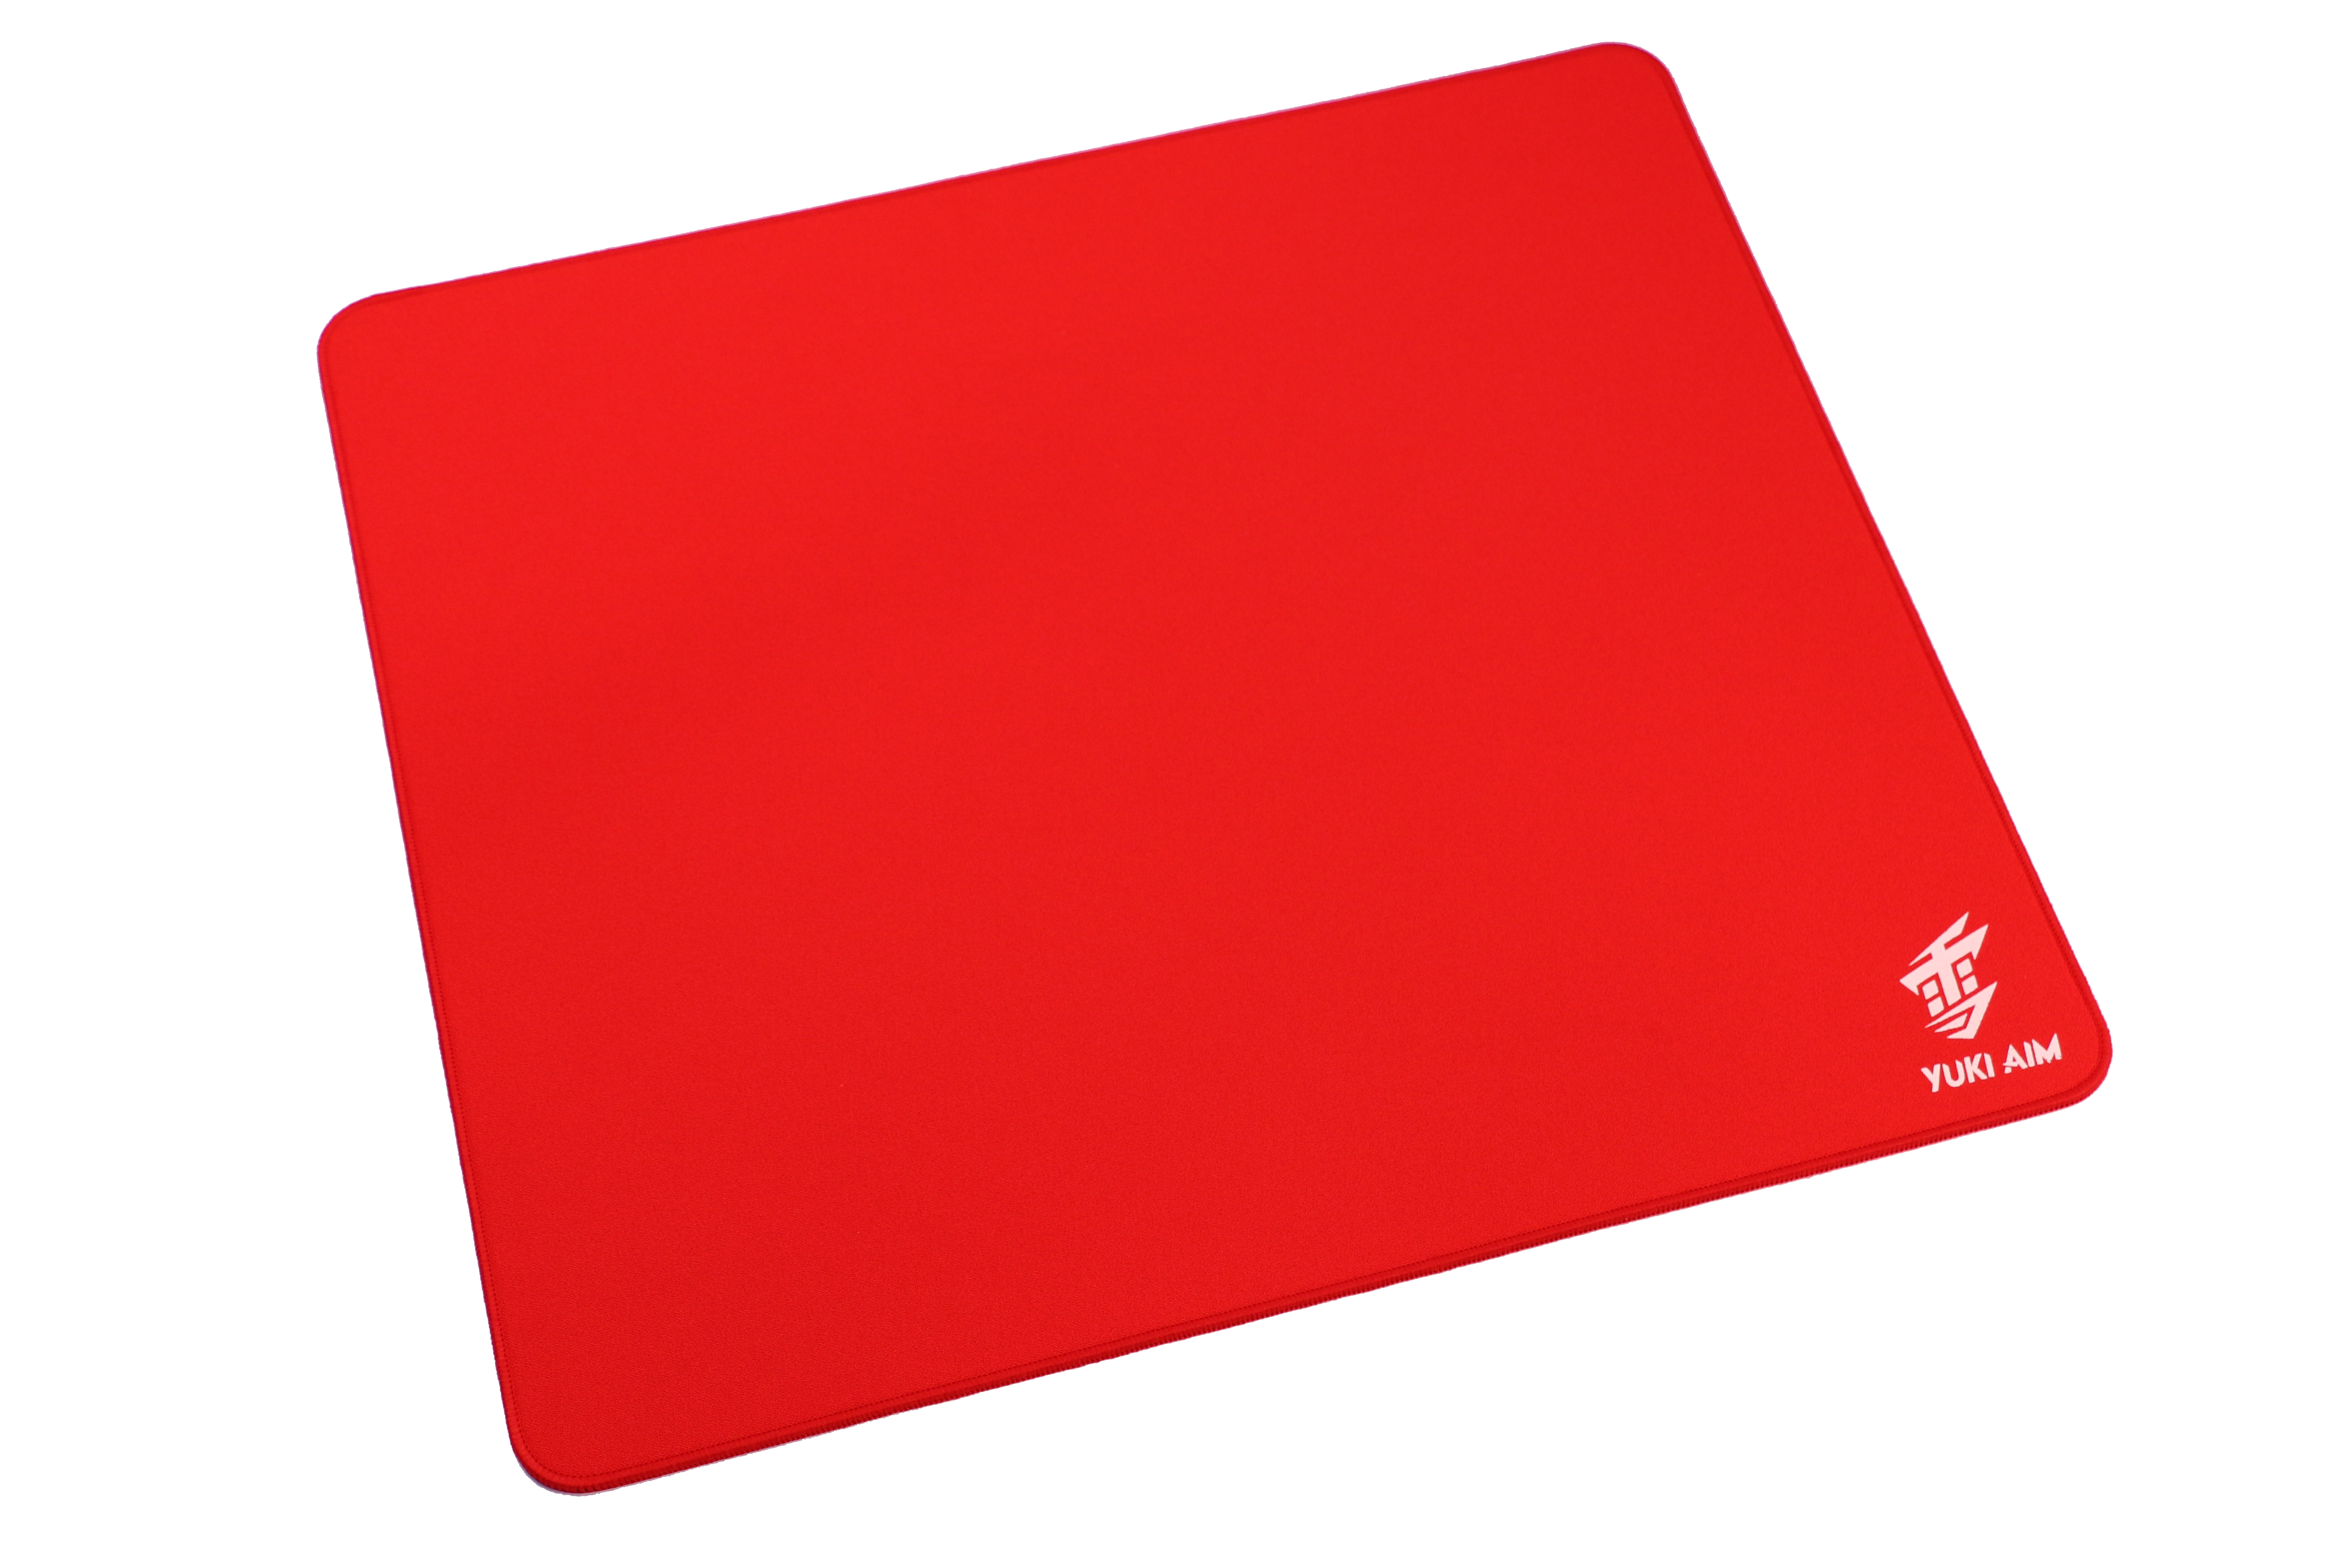 Yuki Aim - Hayai Performance Pad Limited (Red)